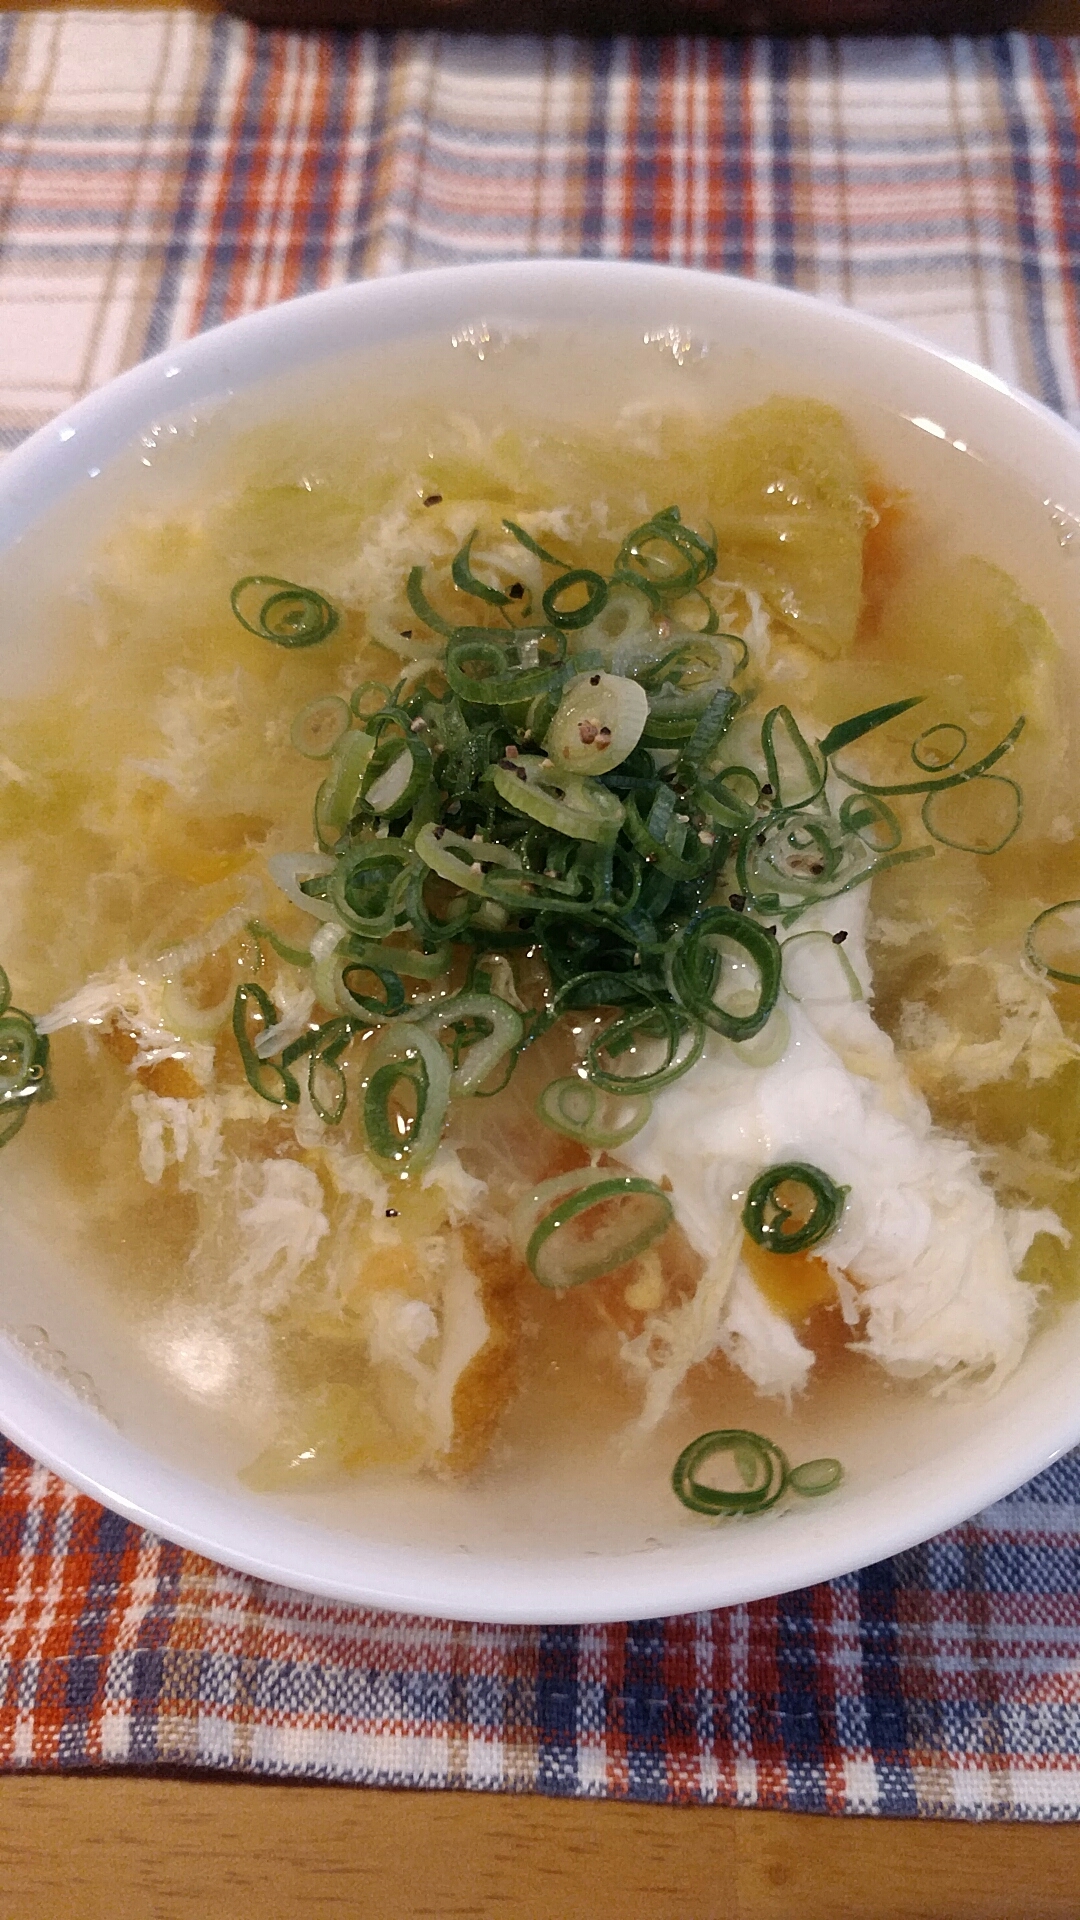 卵とレタスの中華スープ